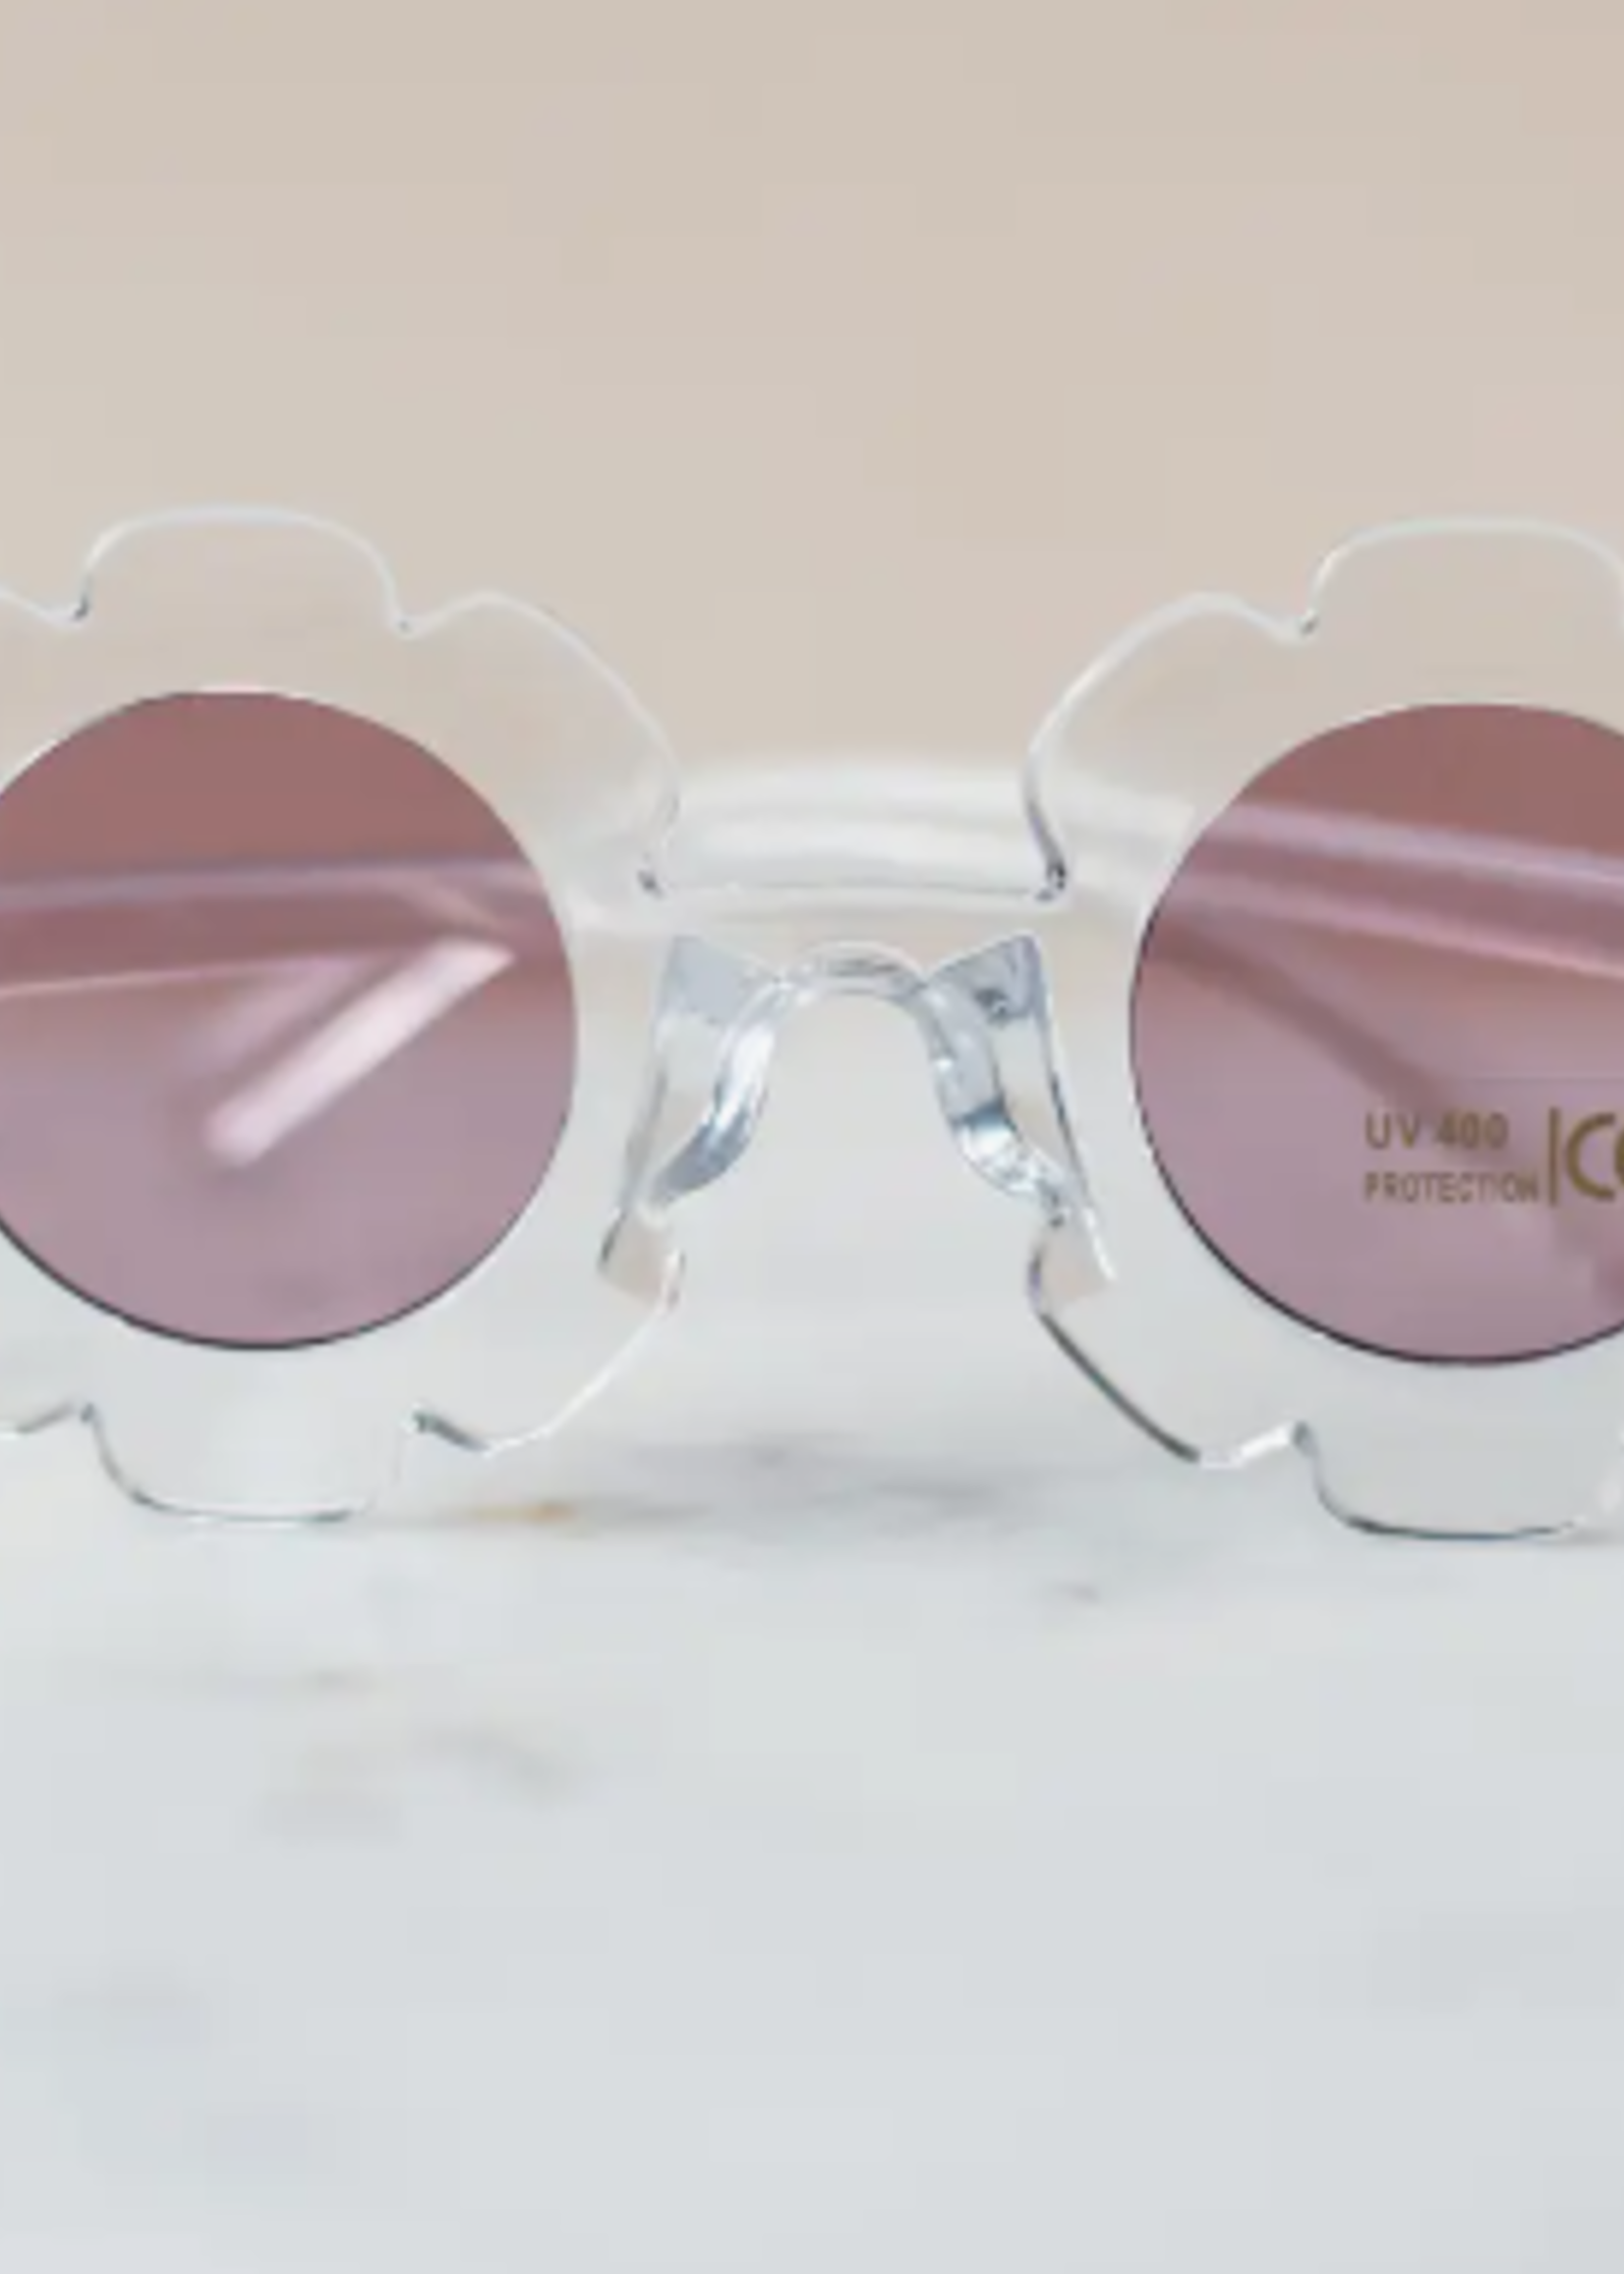 Elitaire Petite Retro Floral Sunglasses